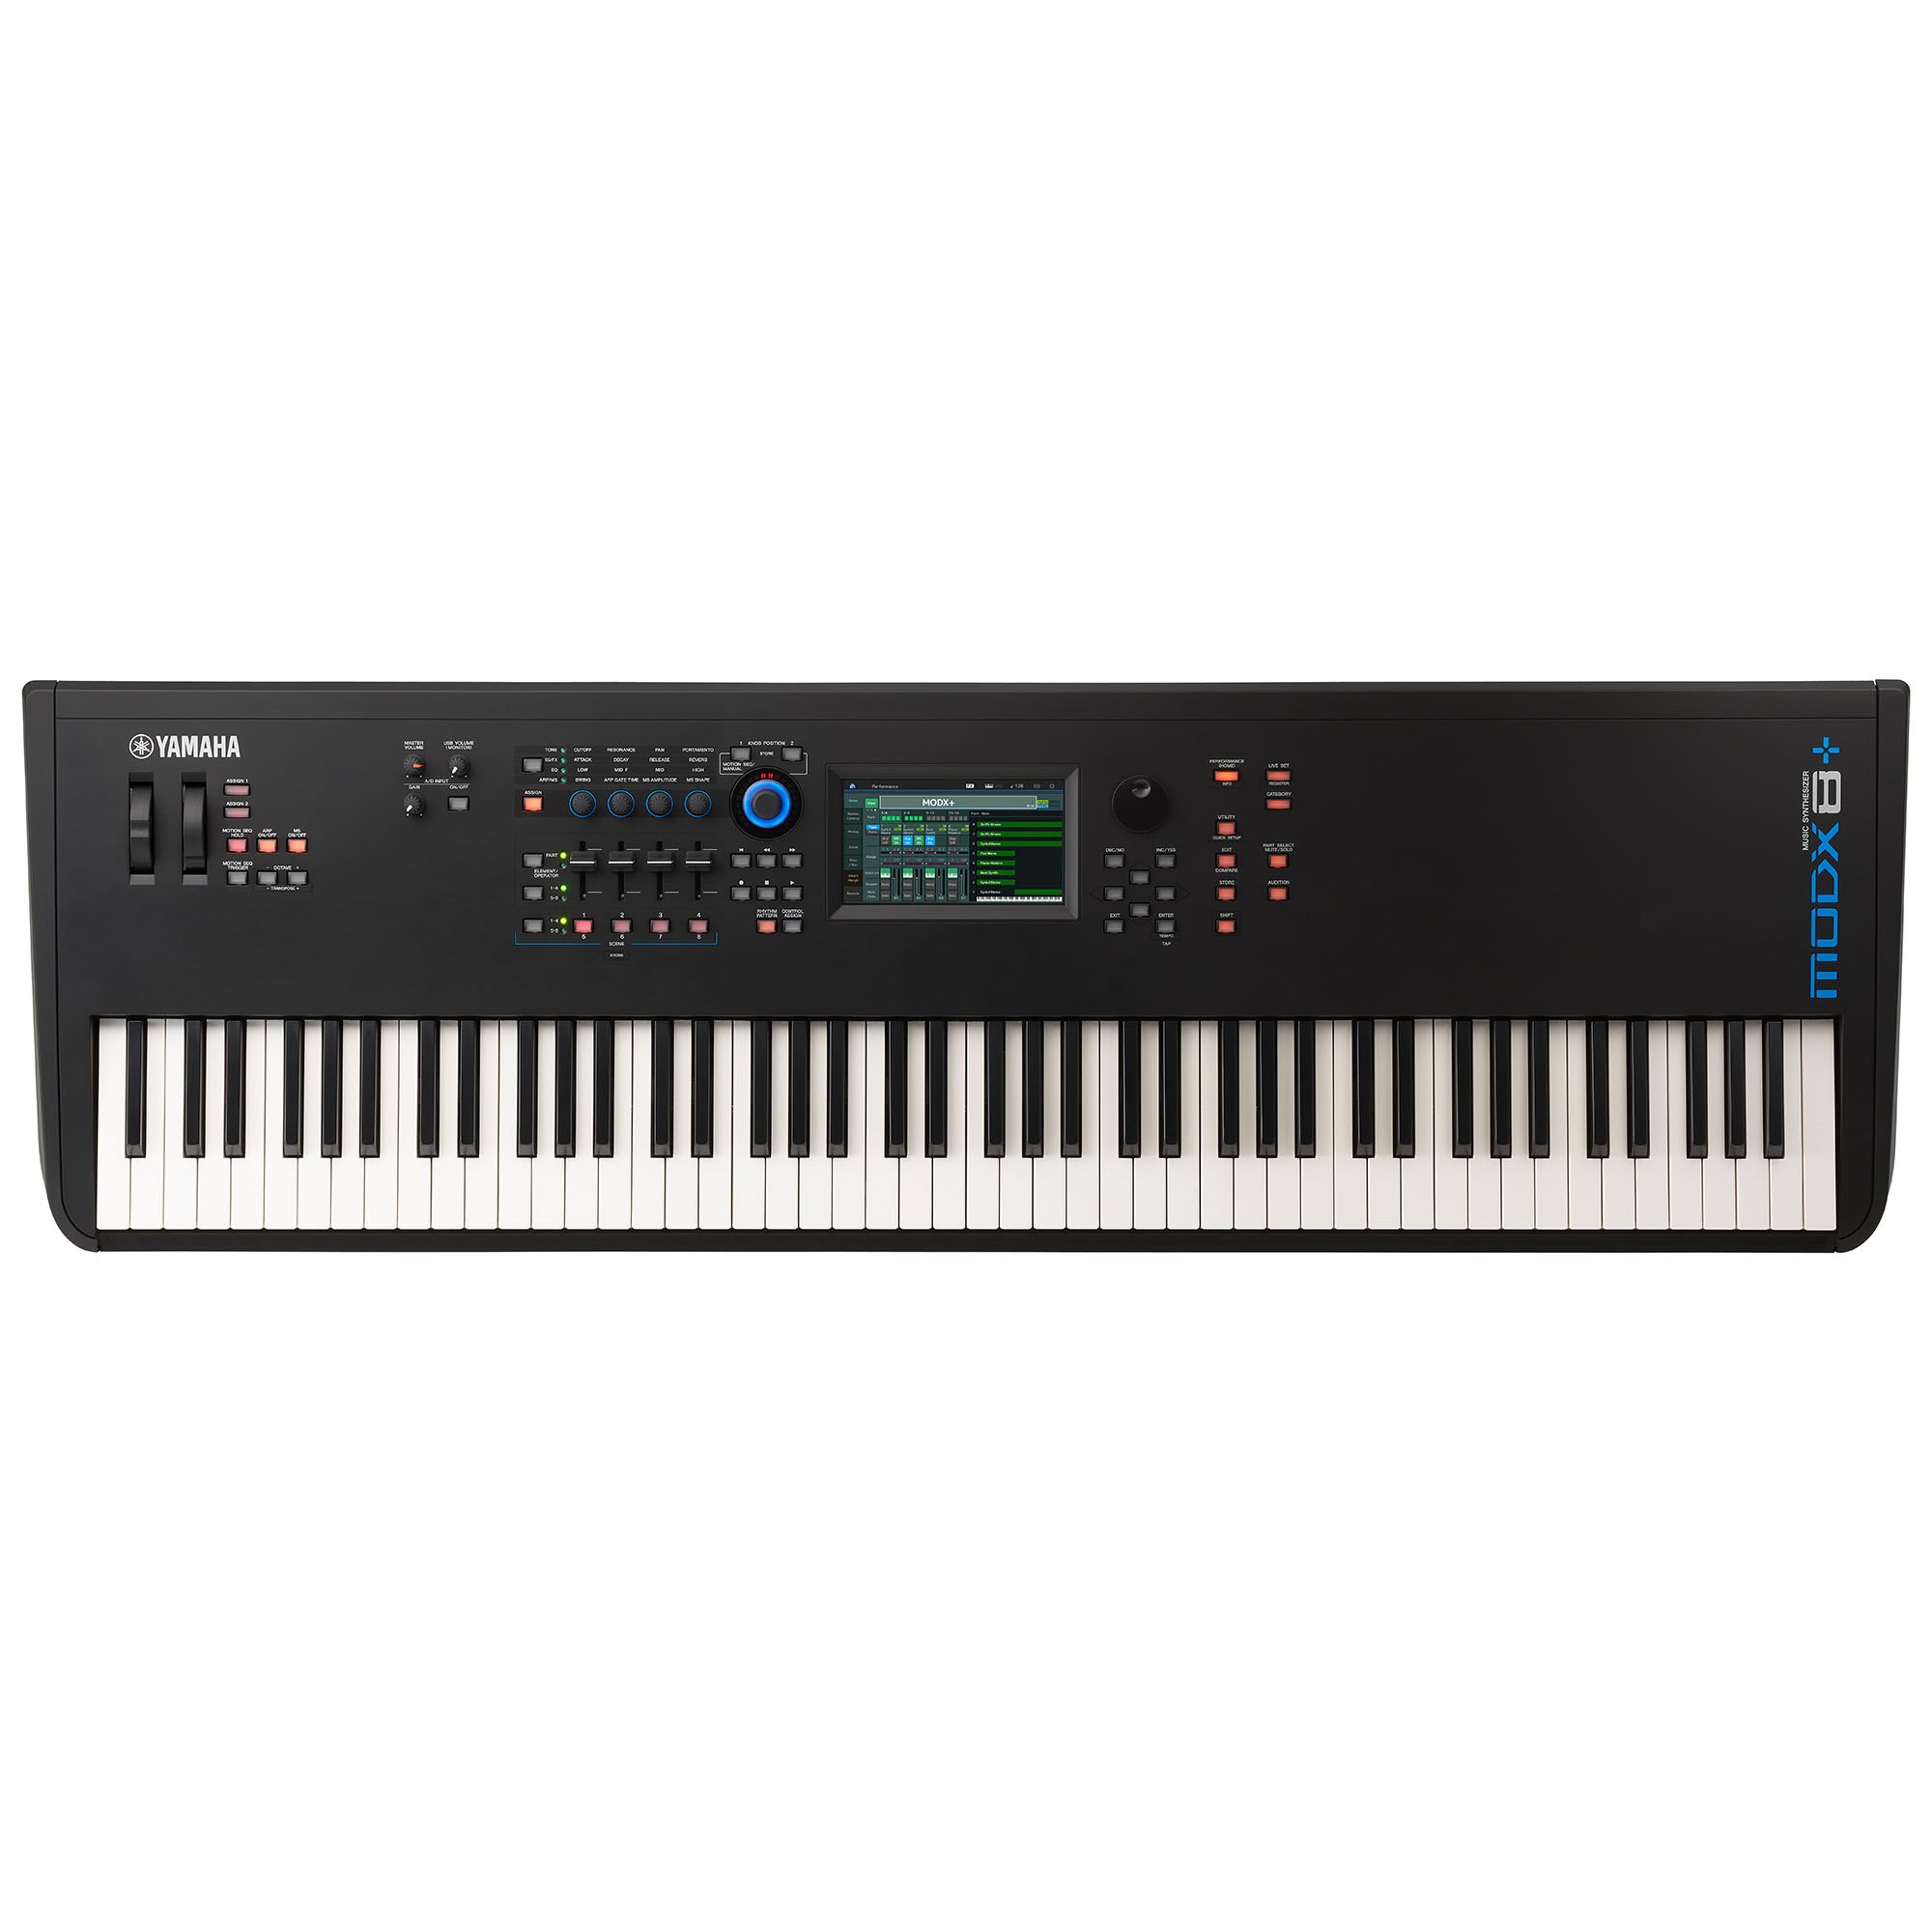 Đàn synthesizer YAMAHA MODX8+ với 88 phím gọn nhẹ - Bảo hành chính hãng 12 tháng